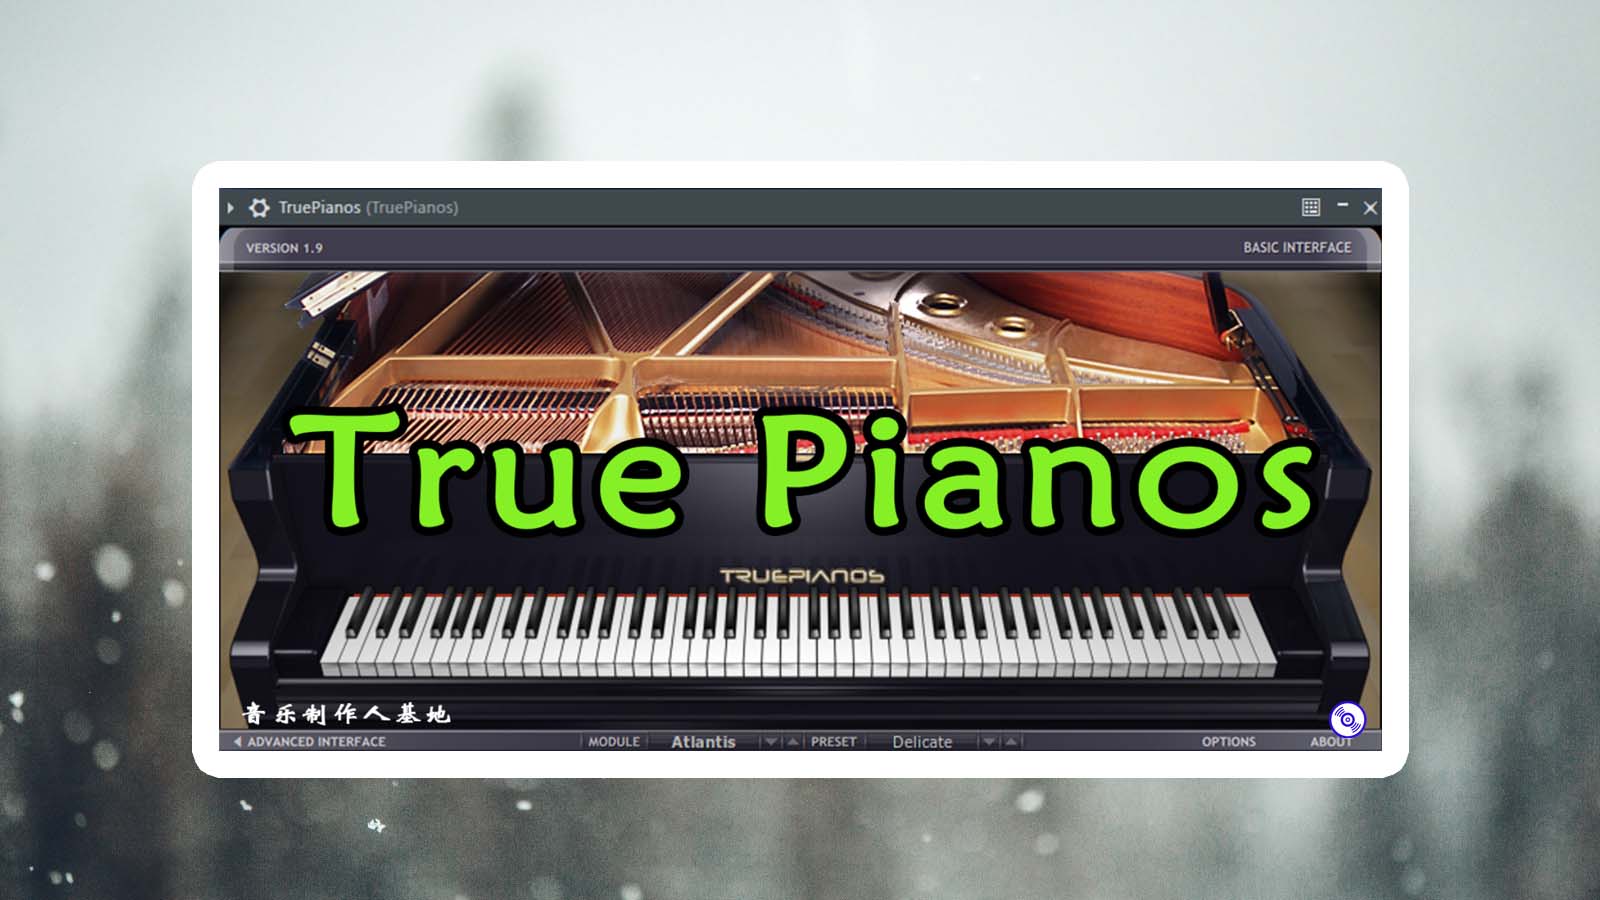 True Piano 钢琴VST插件（编曲必备插件）真实钢琴音质VST独立插件 True Pianos